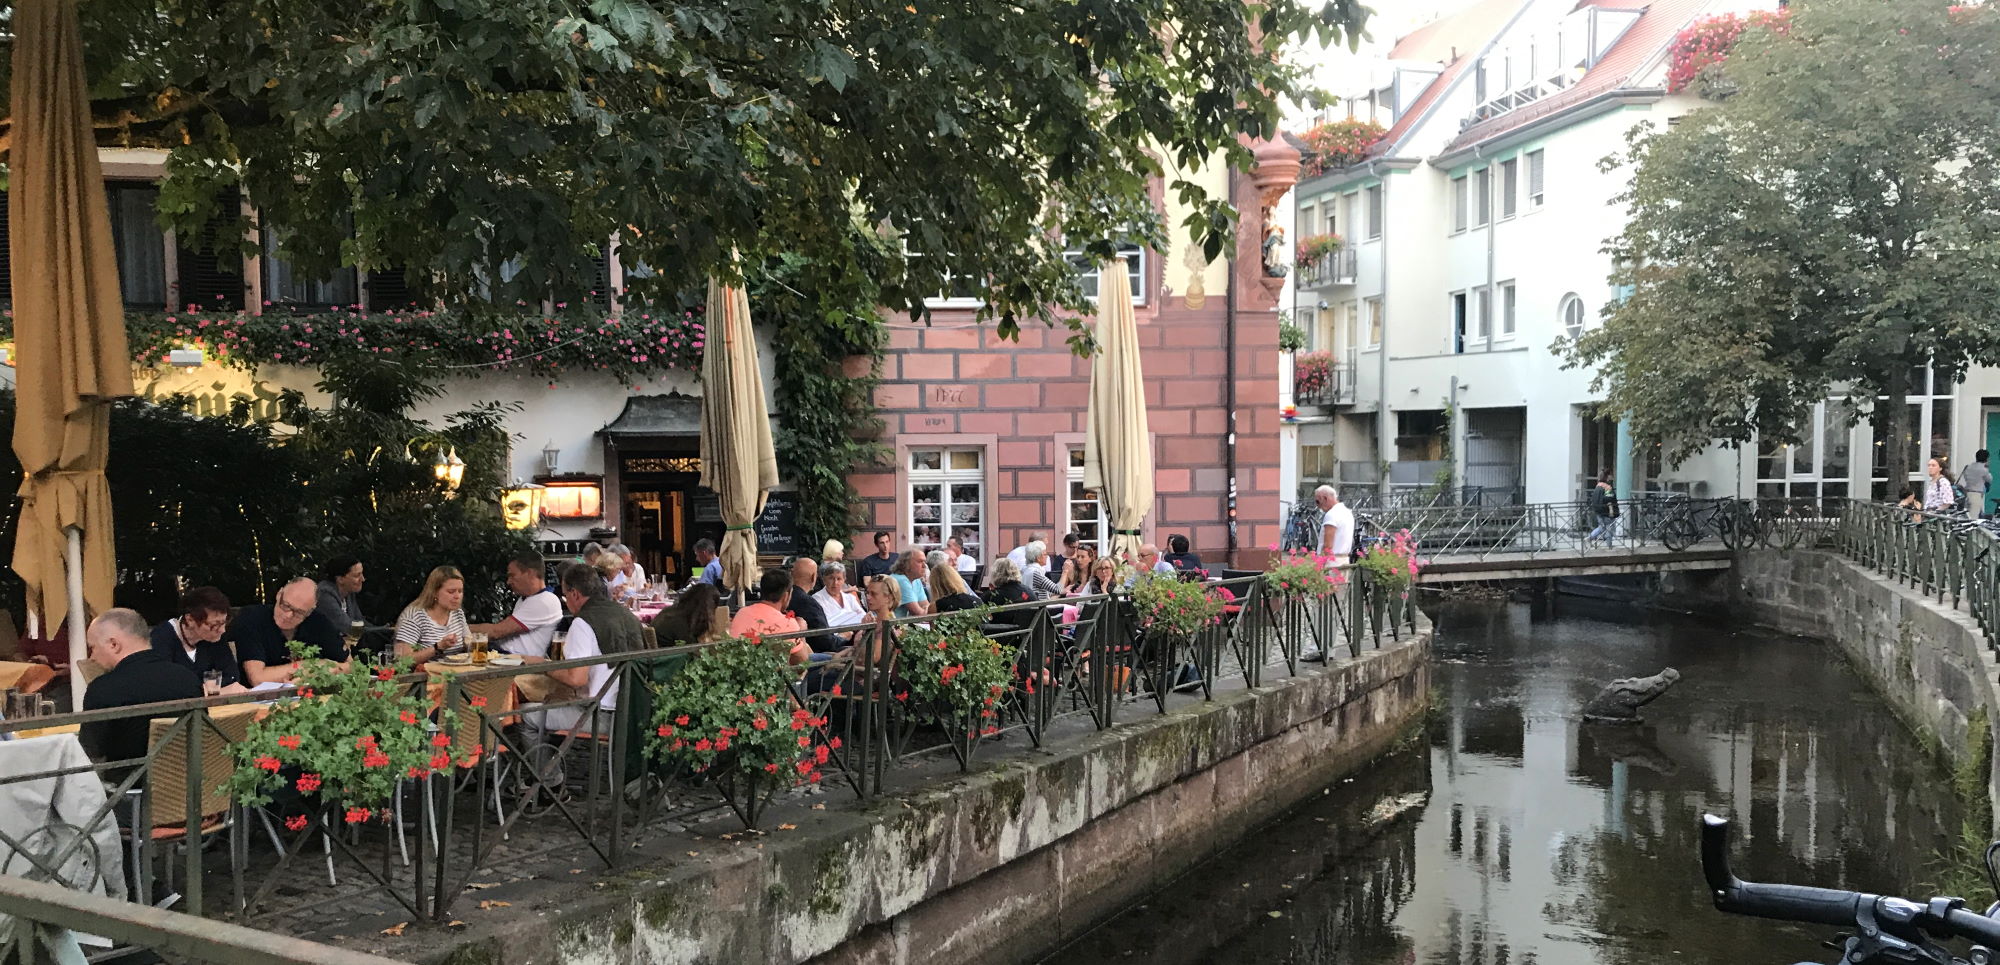 Charming cafe in Freiburg im Breisgau's Altstadt